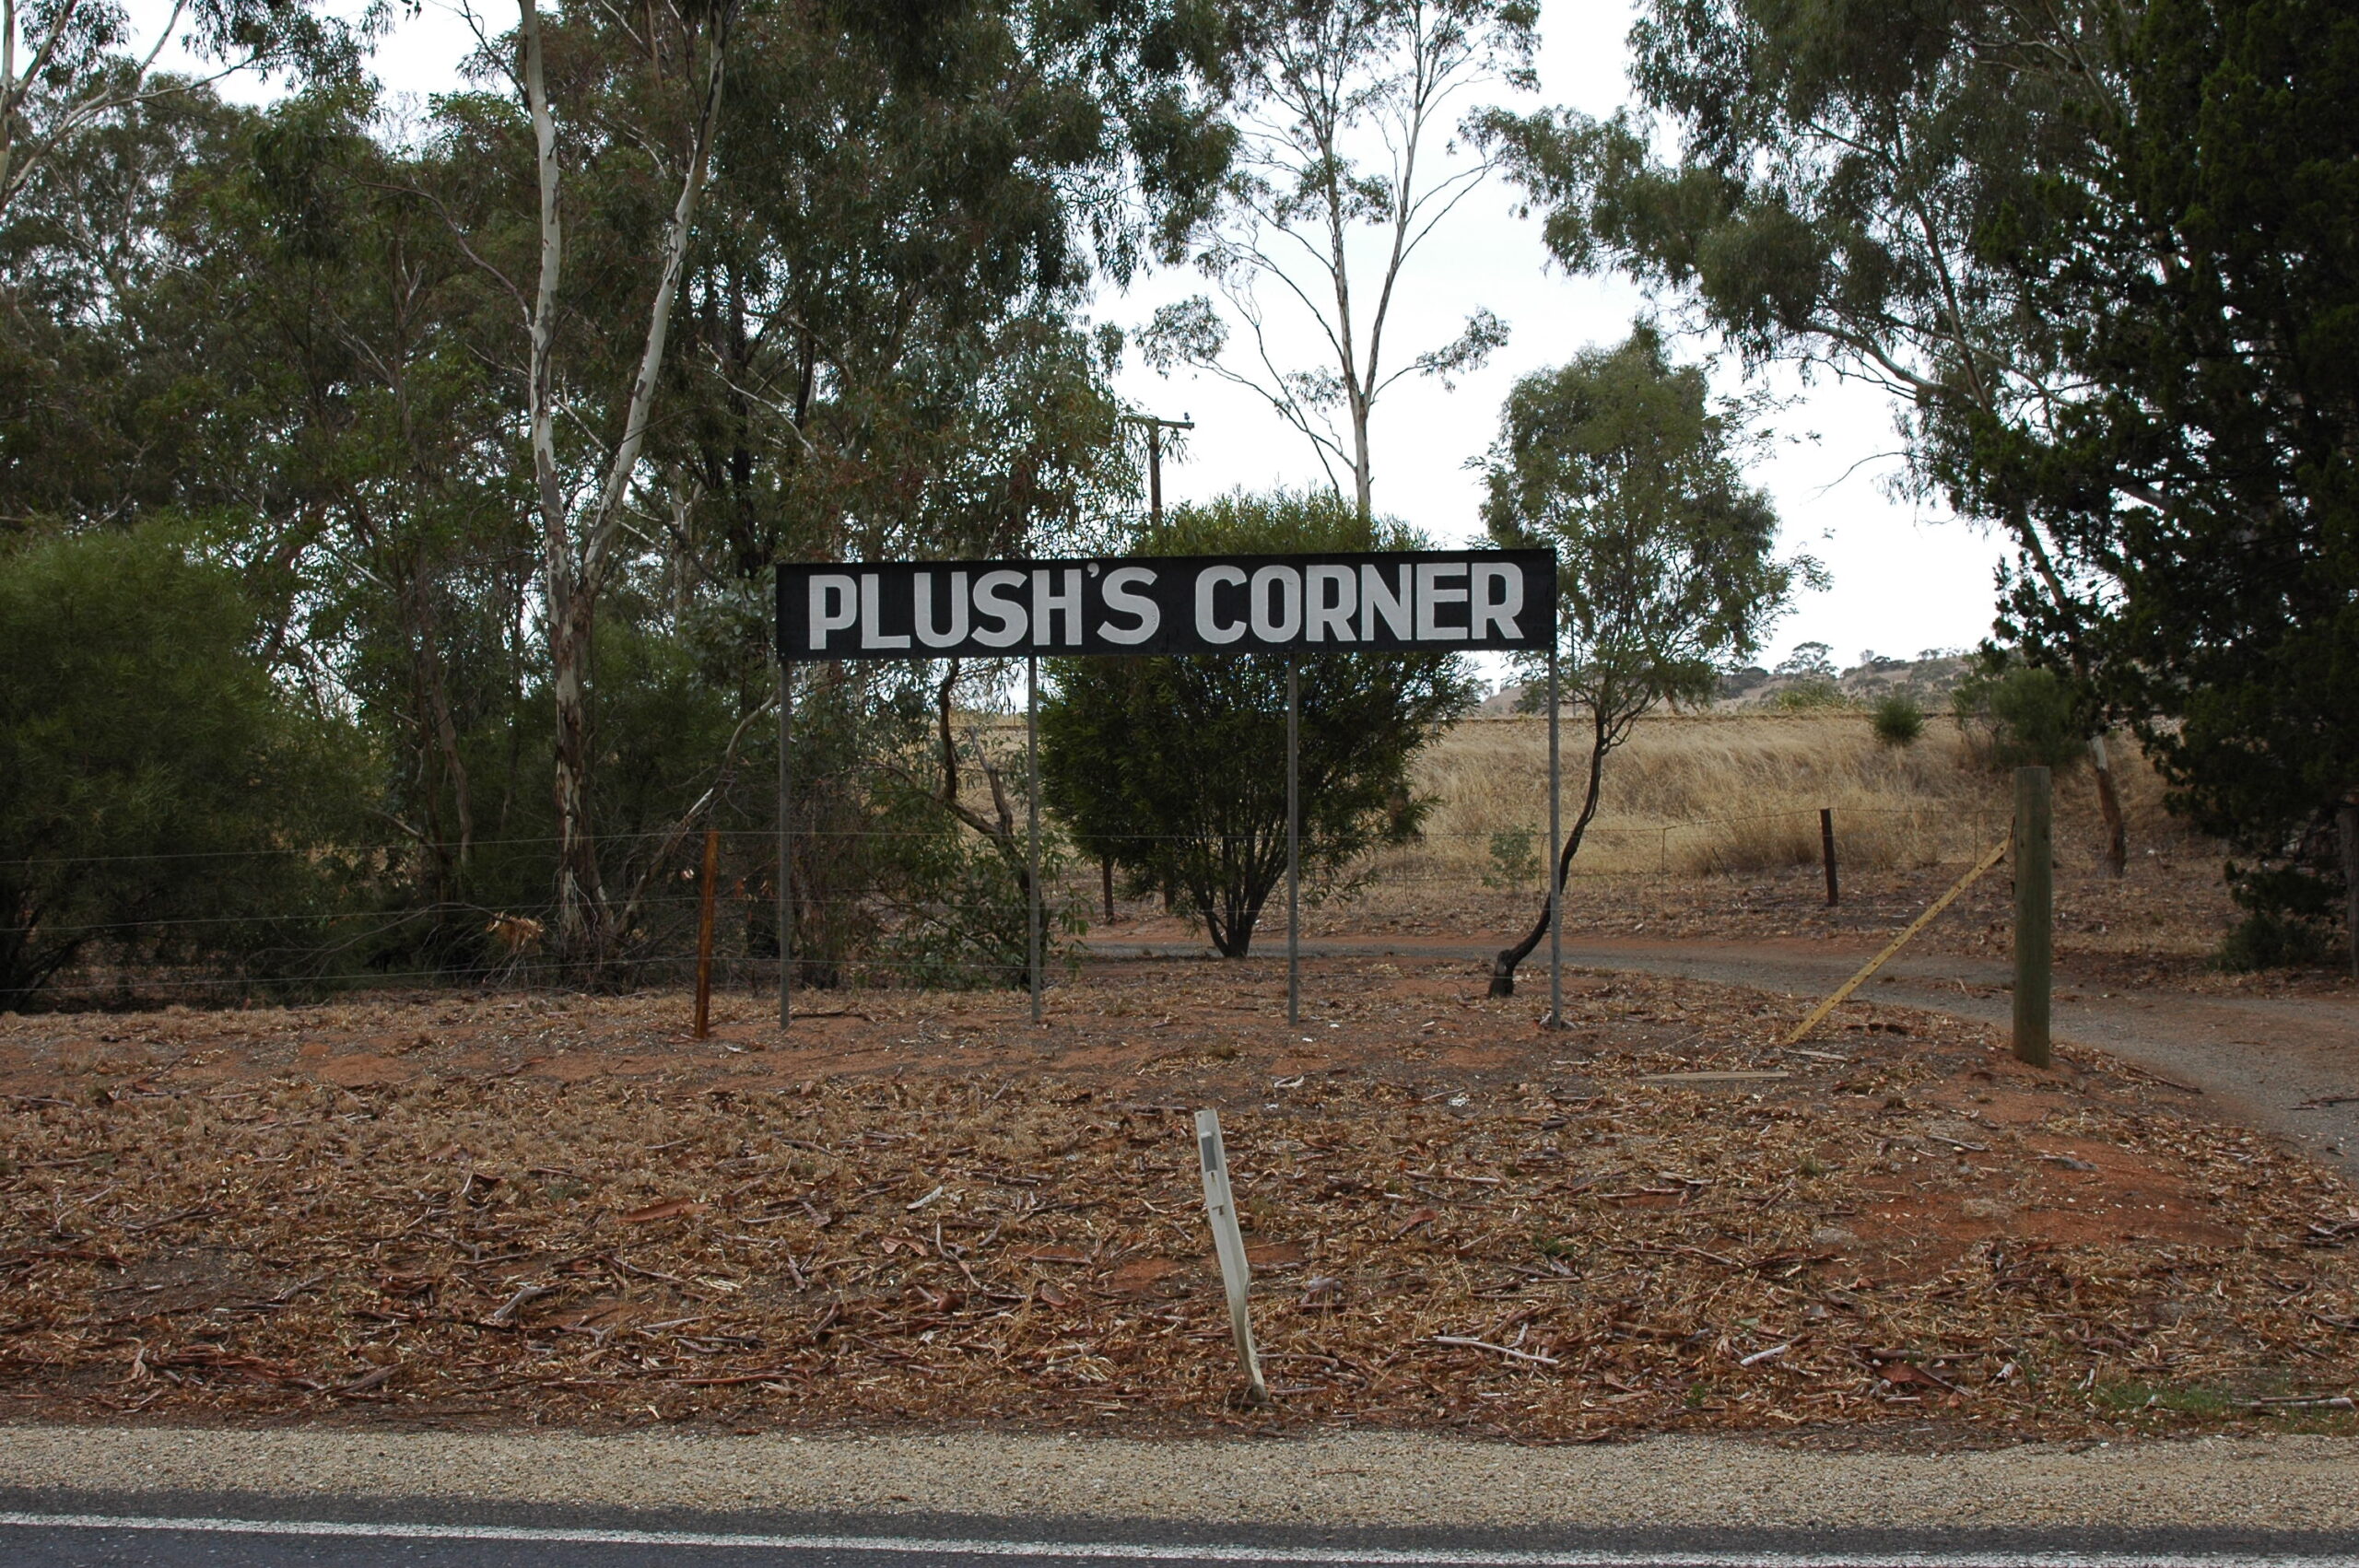 Railway Siding at Plushs Corner